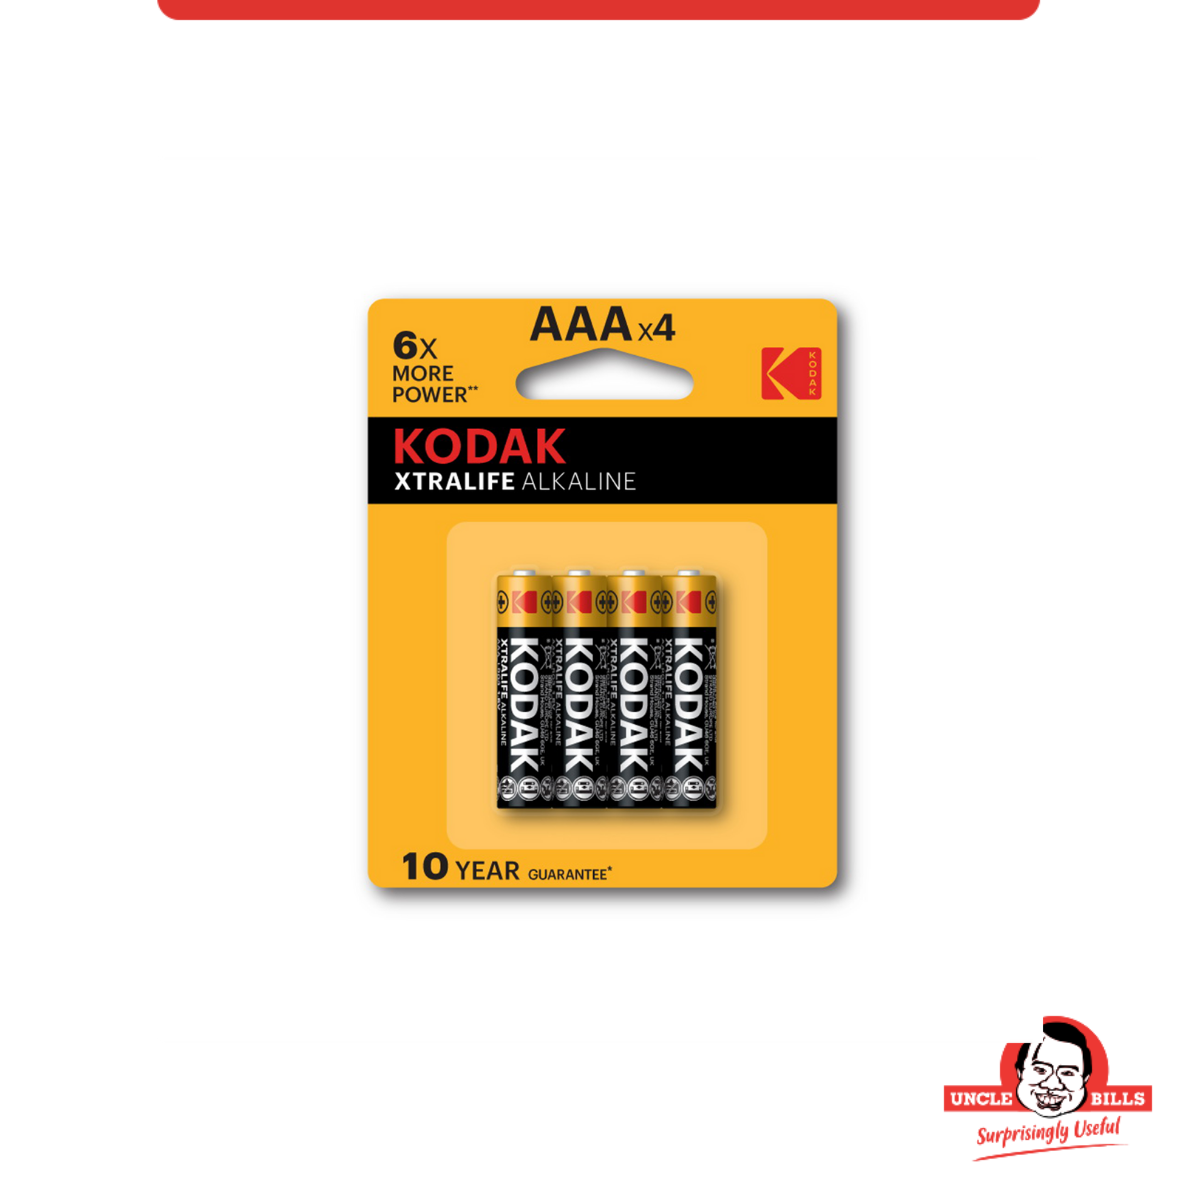 Bộ 4 Pin Kodak Alkaline AAA UBL IB0124